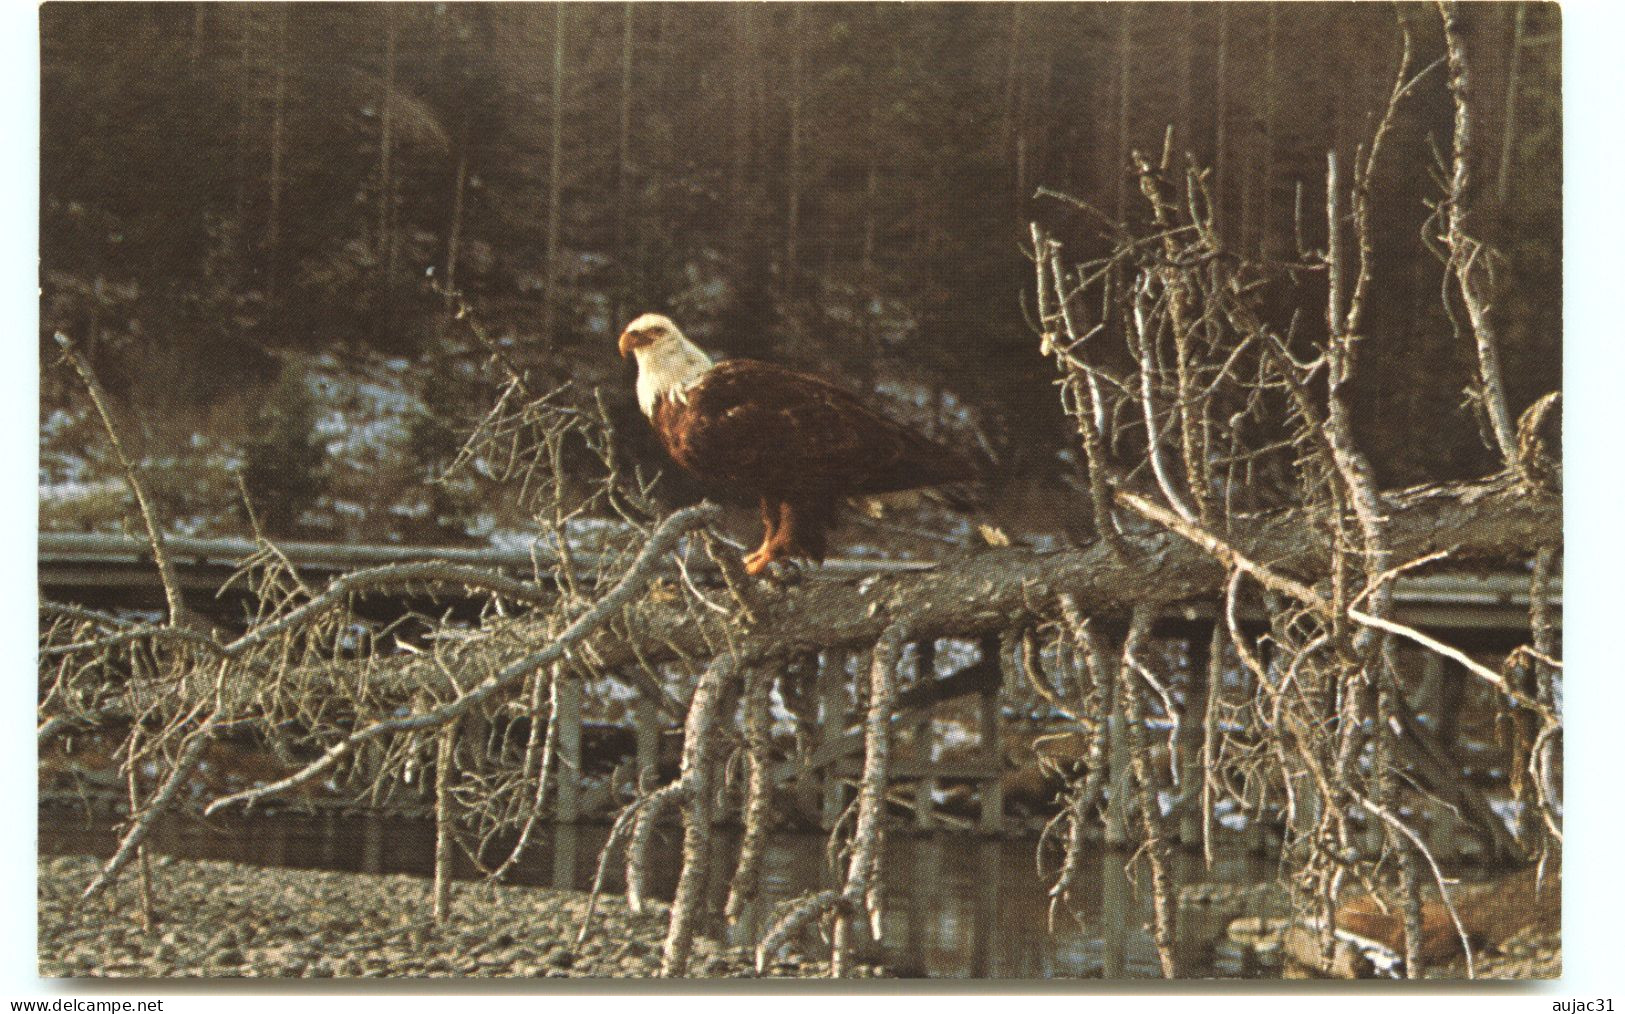 Etats-Unis - Wyoming - Animaux - Aigles - Aigle - Eagles - Bald Eagle - Yellowstone National Park - Bon état - Yellowstone